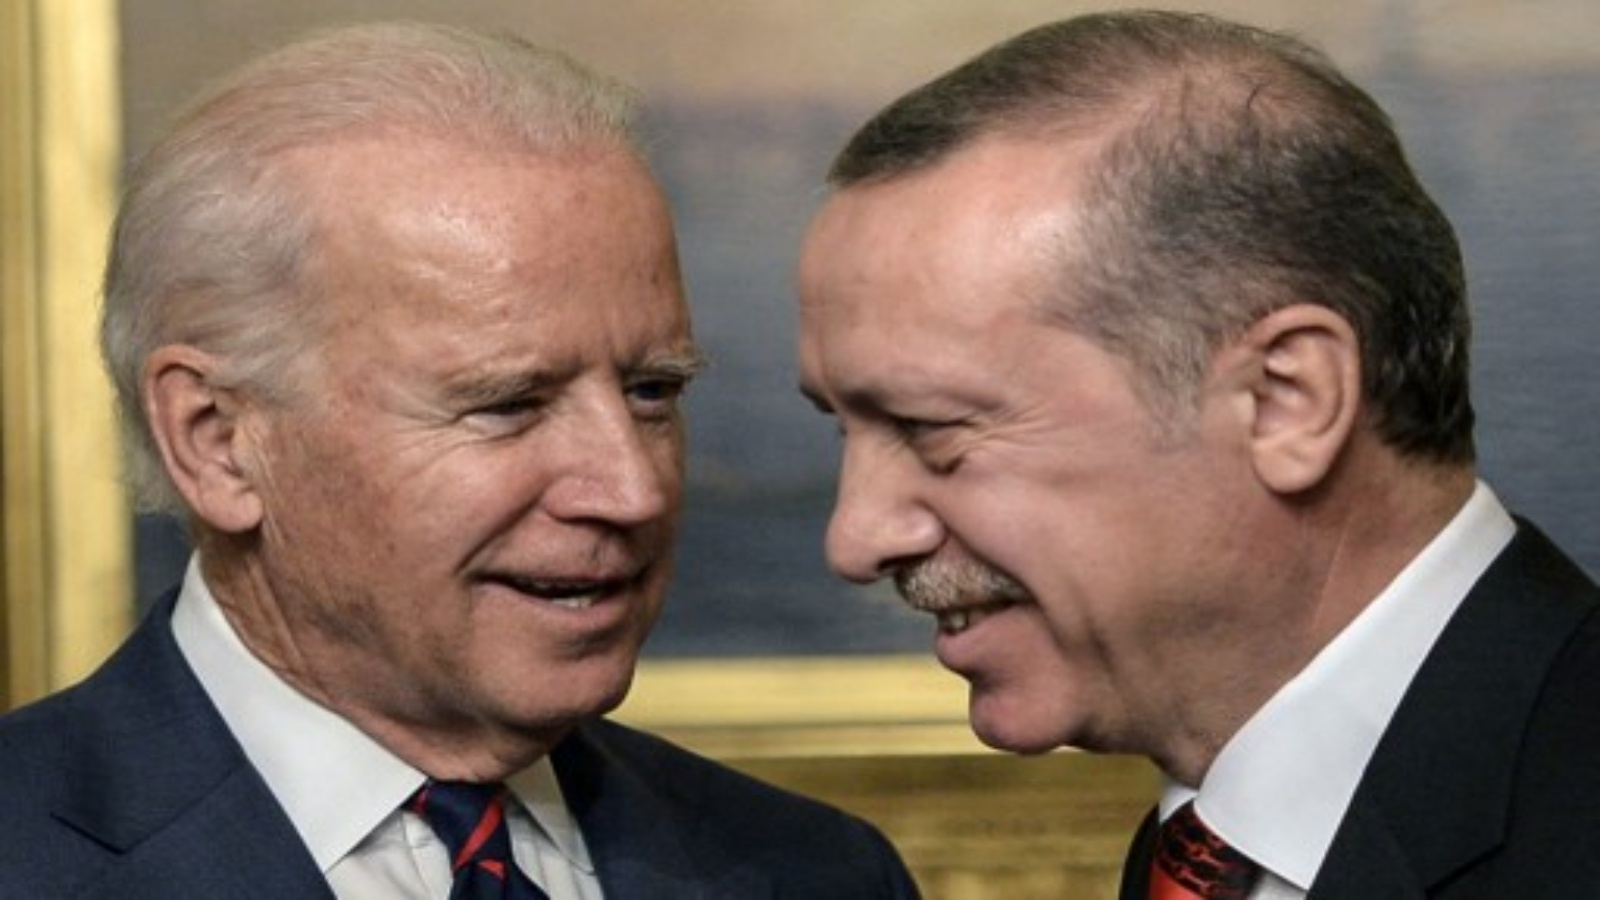 صورة التقطت في 22 نوفمبر 2014 ، نائب الرئيس الأمريكي جو بايدن (إلى اليسار) يتحدث مع الرئيس التركي رجب طيب أردوغان في قصر بيلربي بإسطنبول